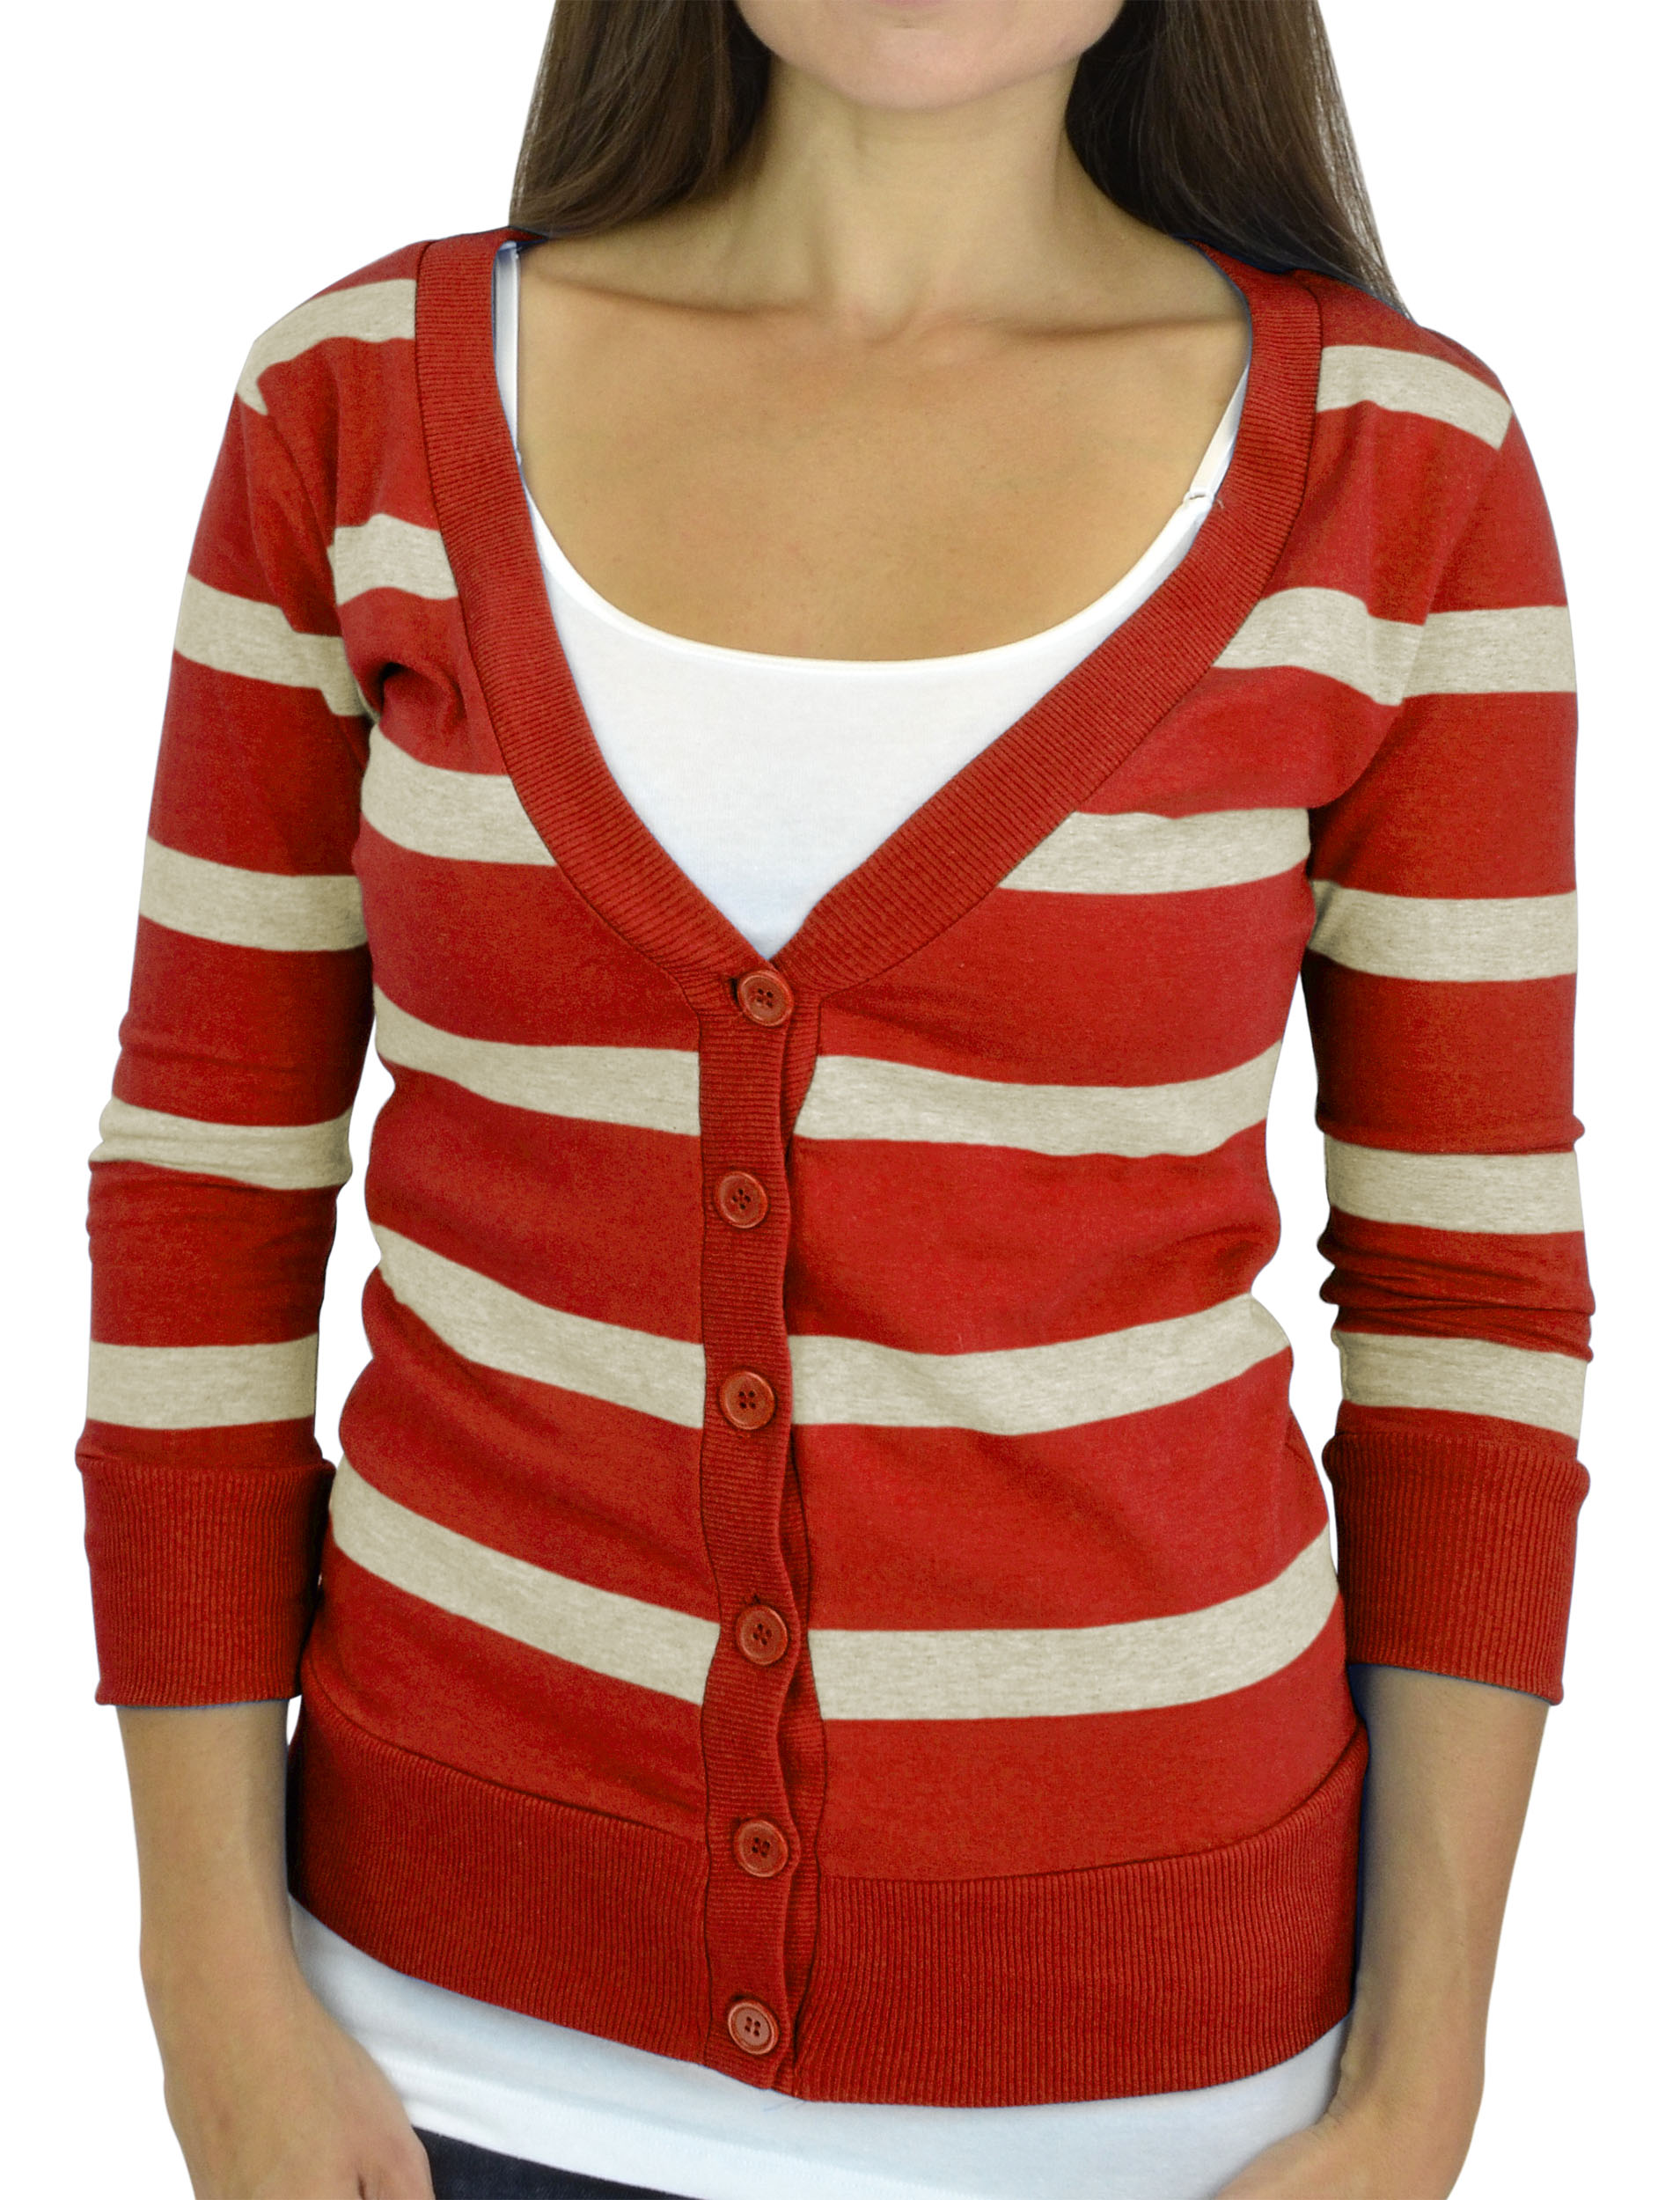 Belle Donne - Women / Girl Junior Size Soft 3/4 Sleeve V-Neck Sweater Cardigans - Heather Beige/Large